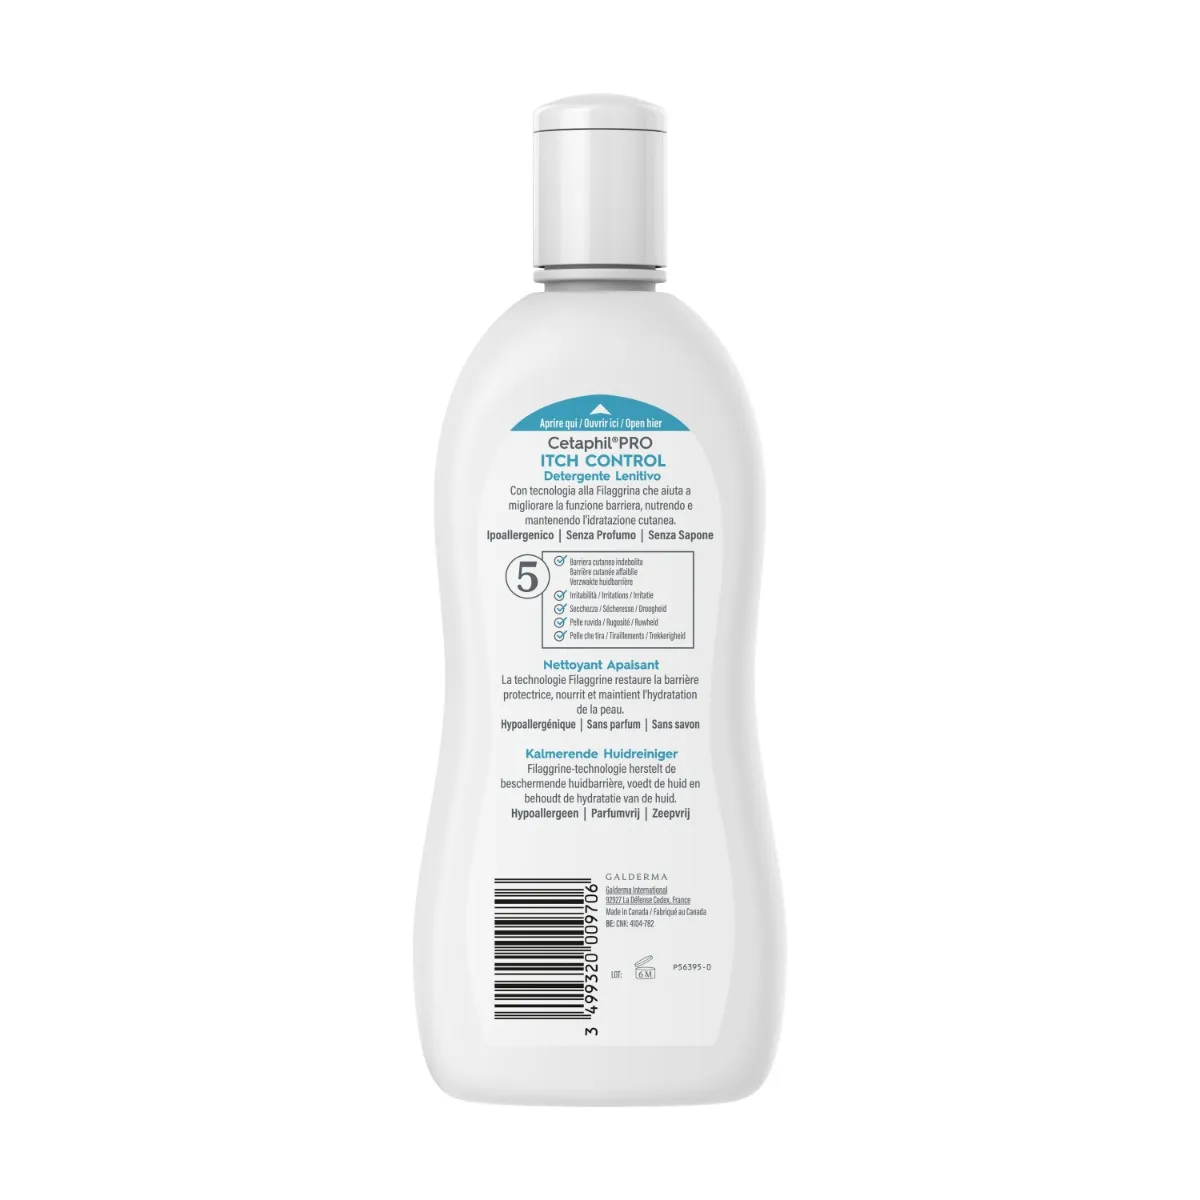 Cetaphil Pro Detergente Lenitivo 295 ml 